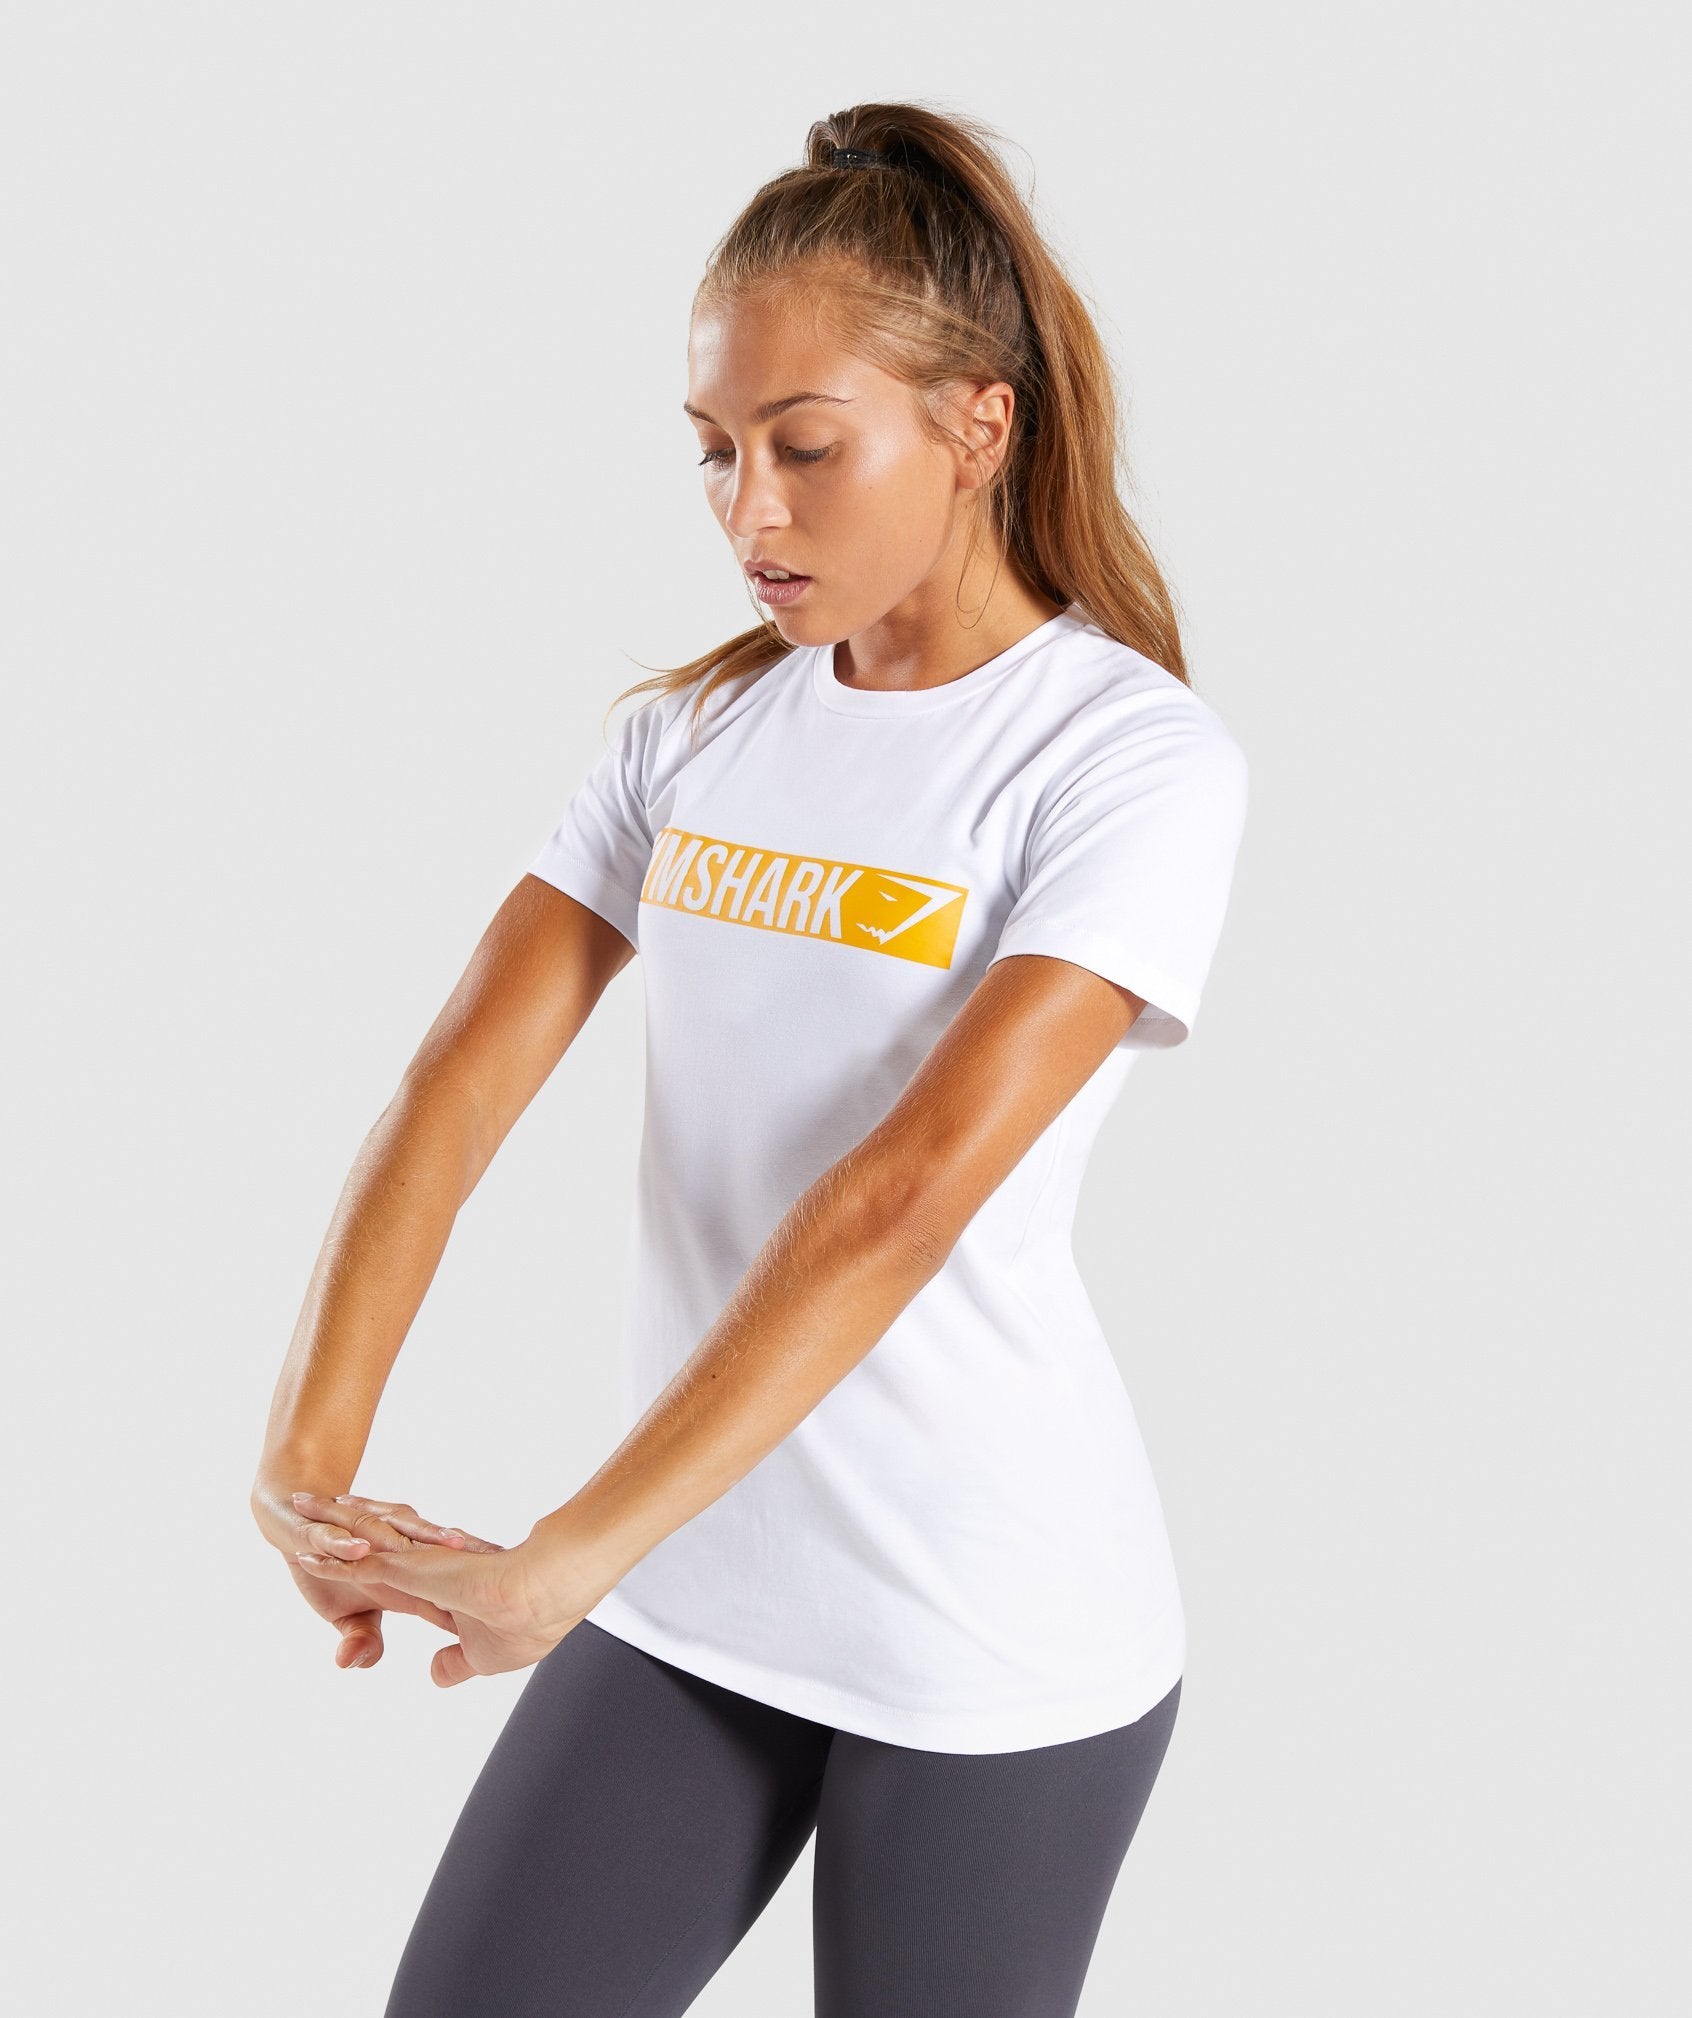 Apollo T-Shirt 2.0 in White/Citrus Yellow - view 3